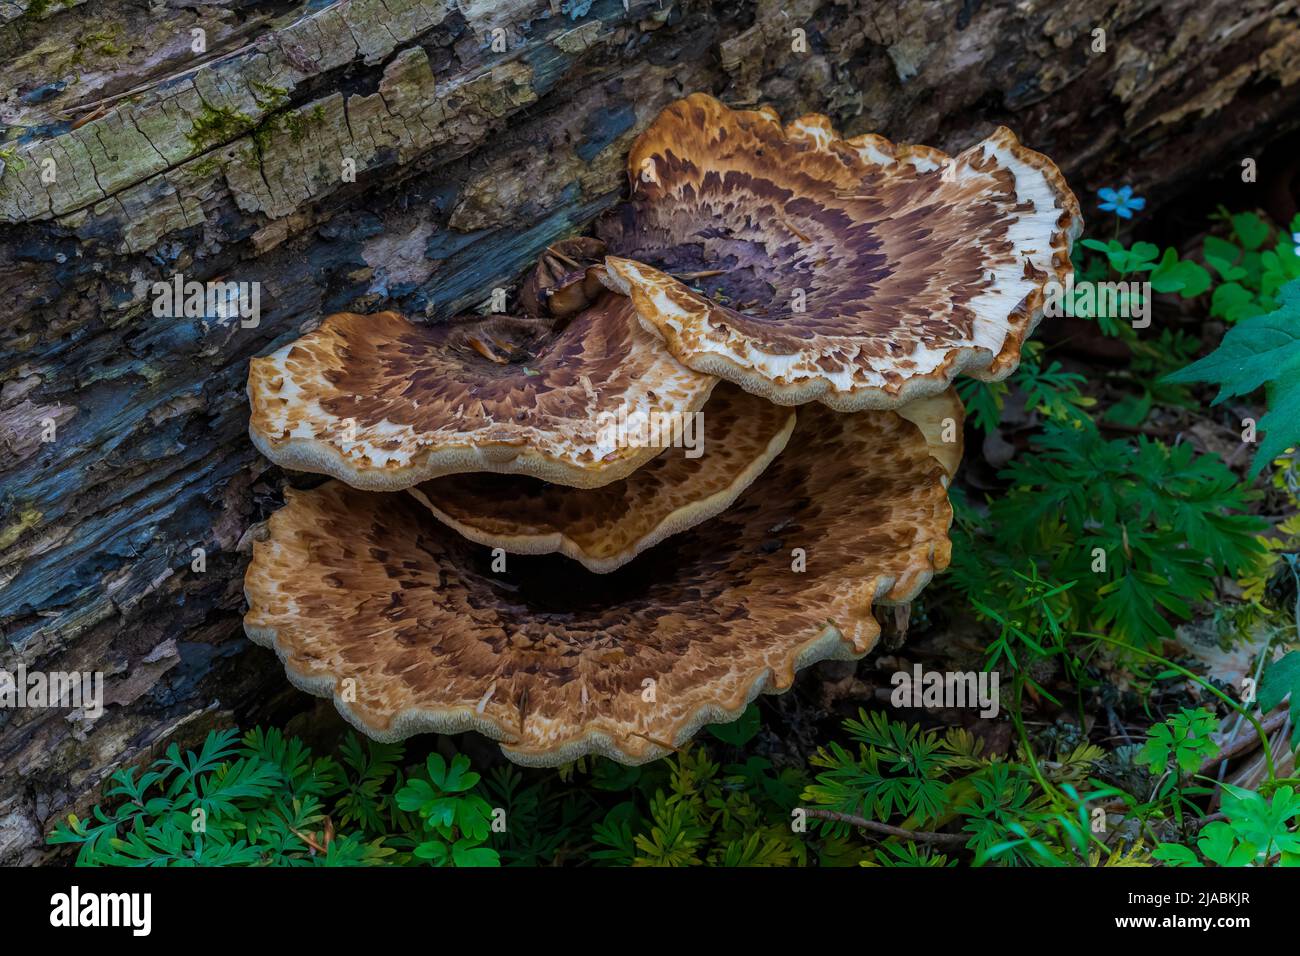 Espalda del faisán, Cerioporus squamosus, un hongo en un tronco caído en Trillium Ravine Preserve, una reserva de la Asociación de la Naturaleza de Michigan, Estados Unidos Foto de stock